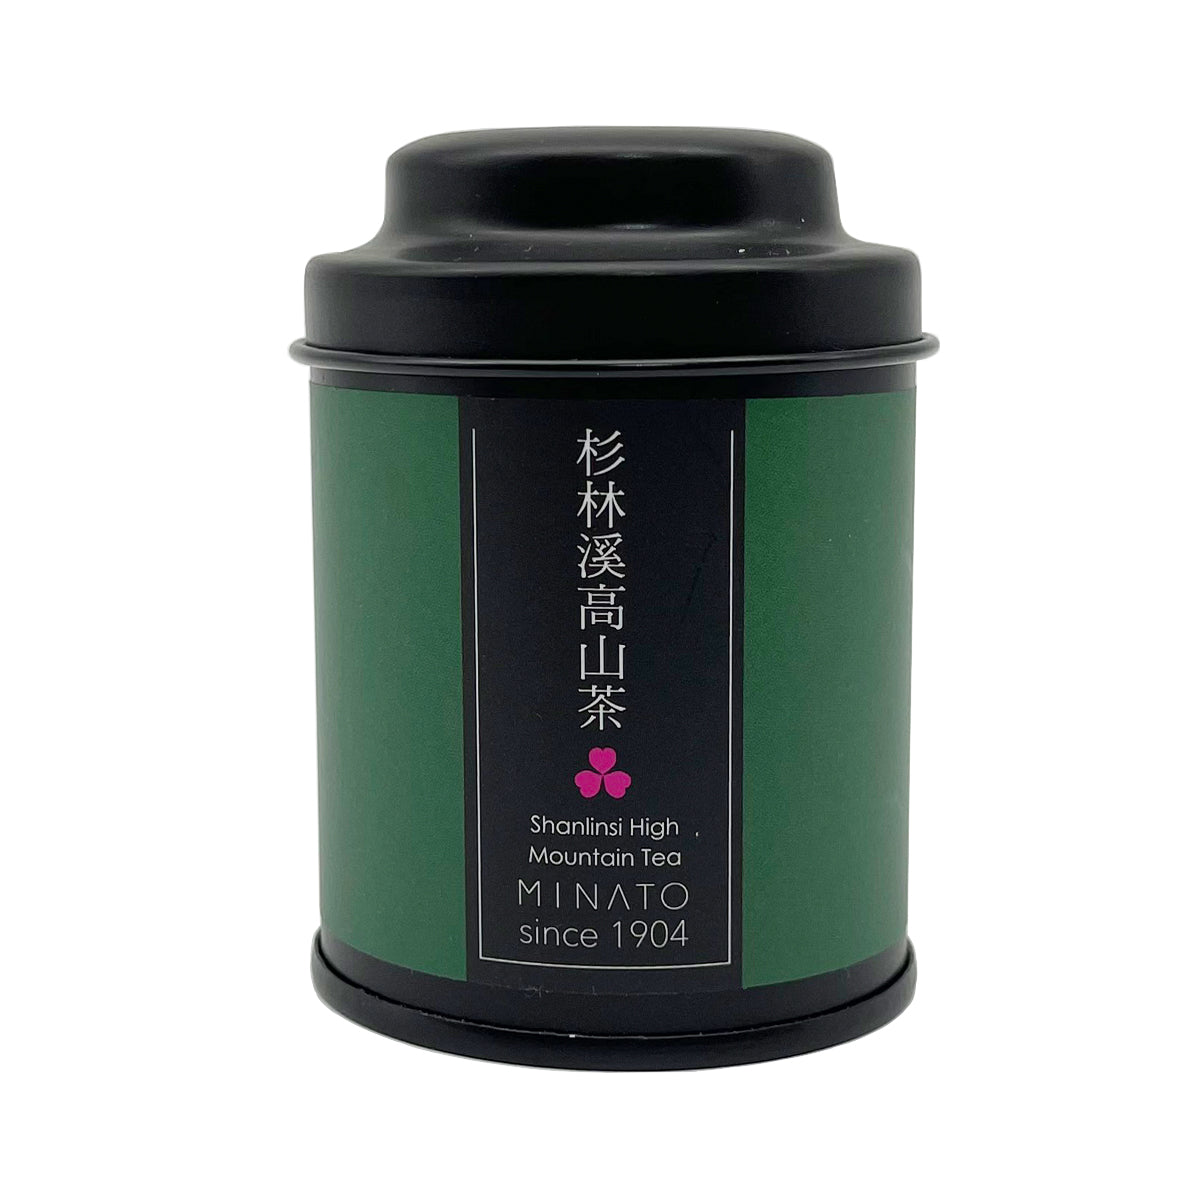 【 MINATO 】 Shanlinsi High Mountain Tea (mini round black tin) 25g